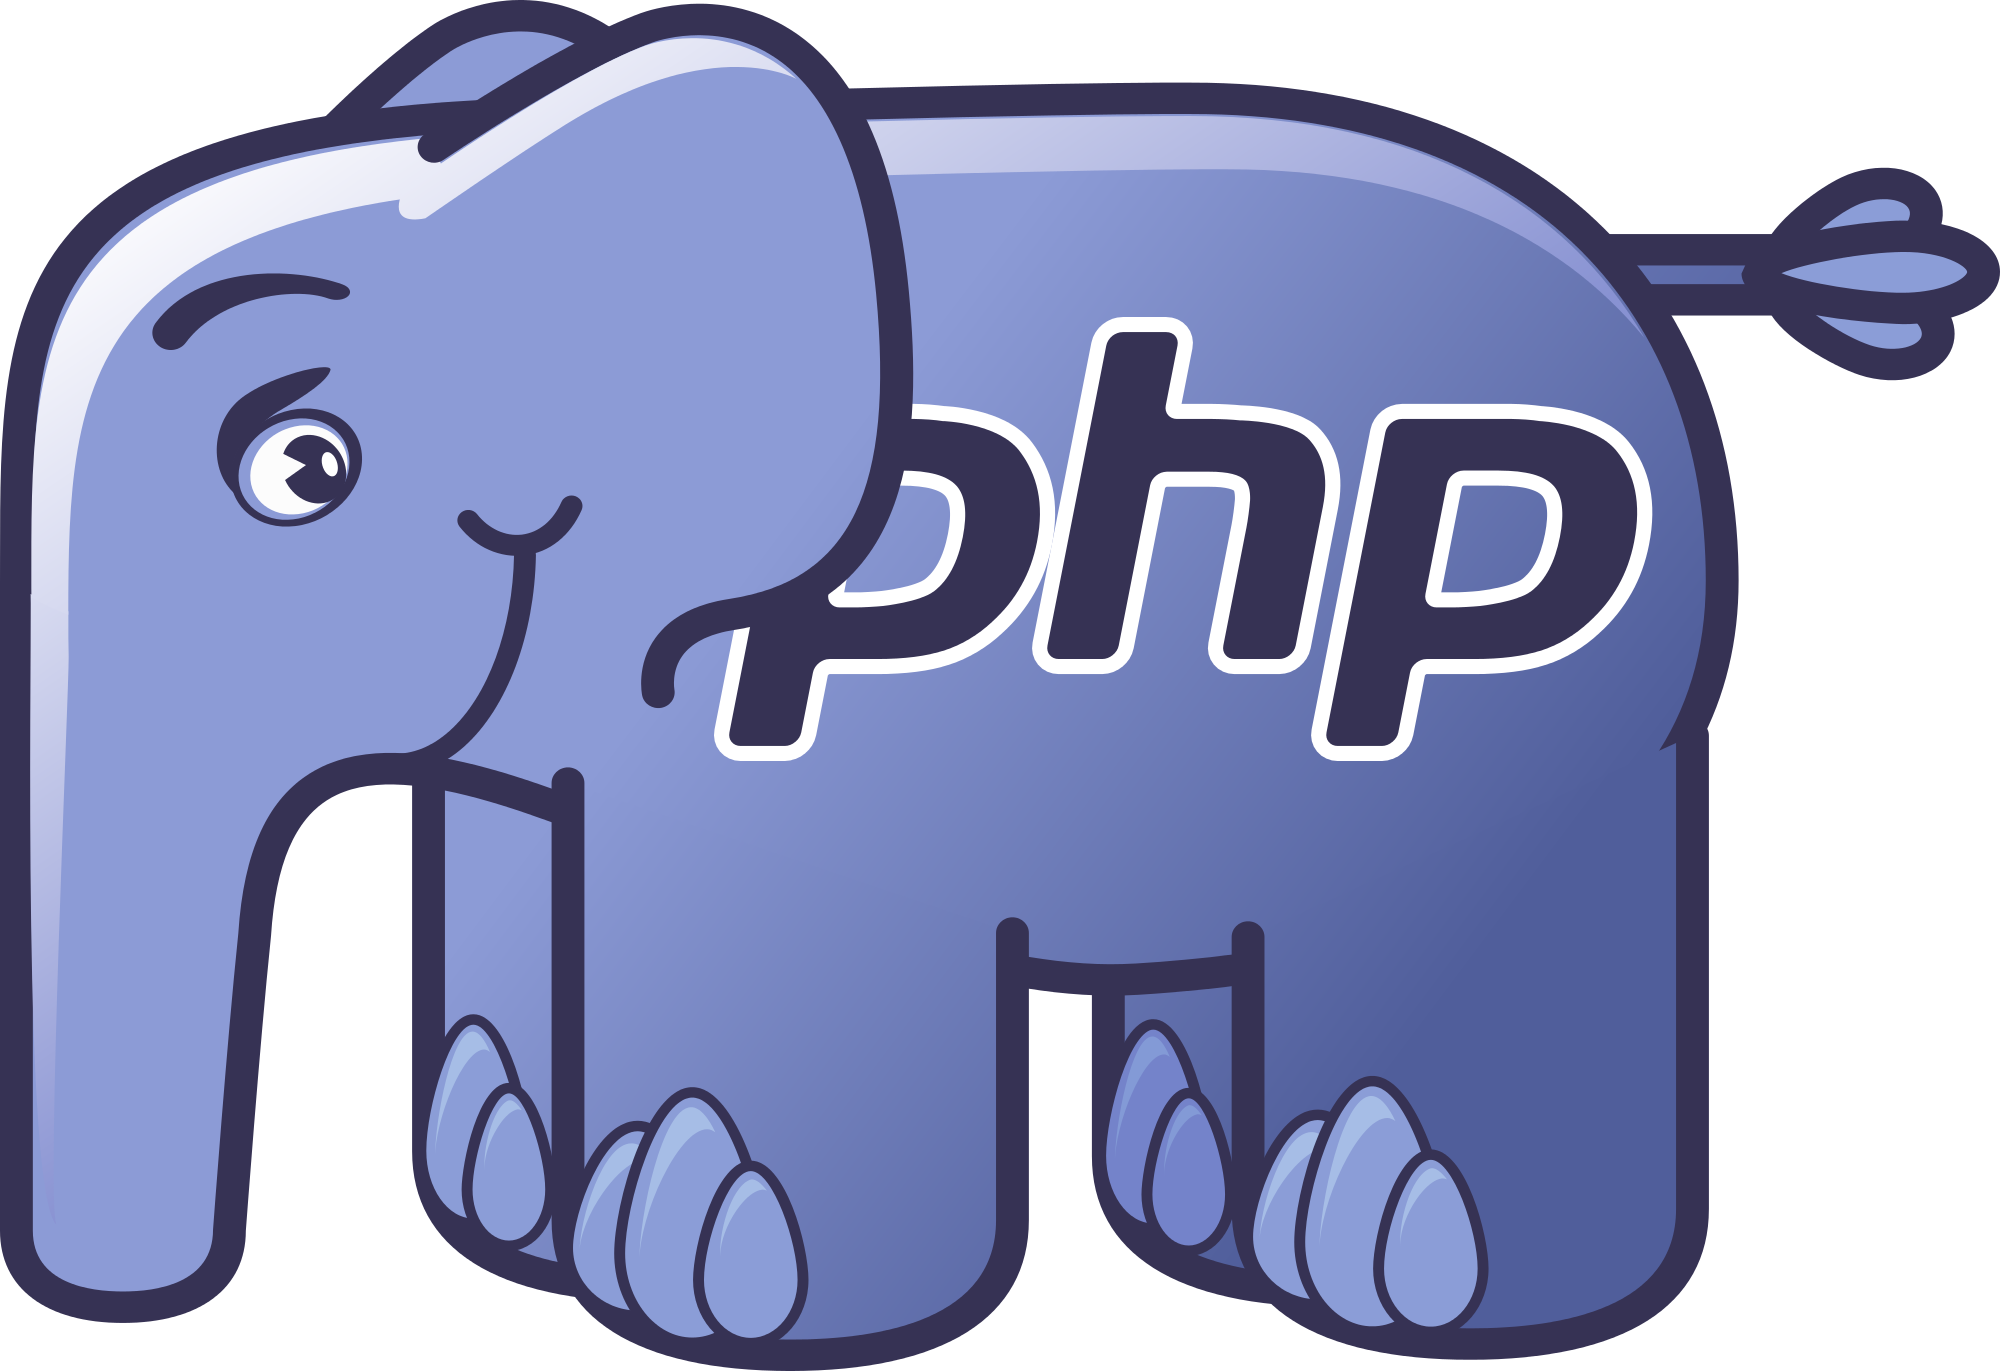 Php 7.0. Язык программированияphp. Php язык программирования лого. Эмблема языка программирования php. Значок языка программирования php.